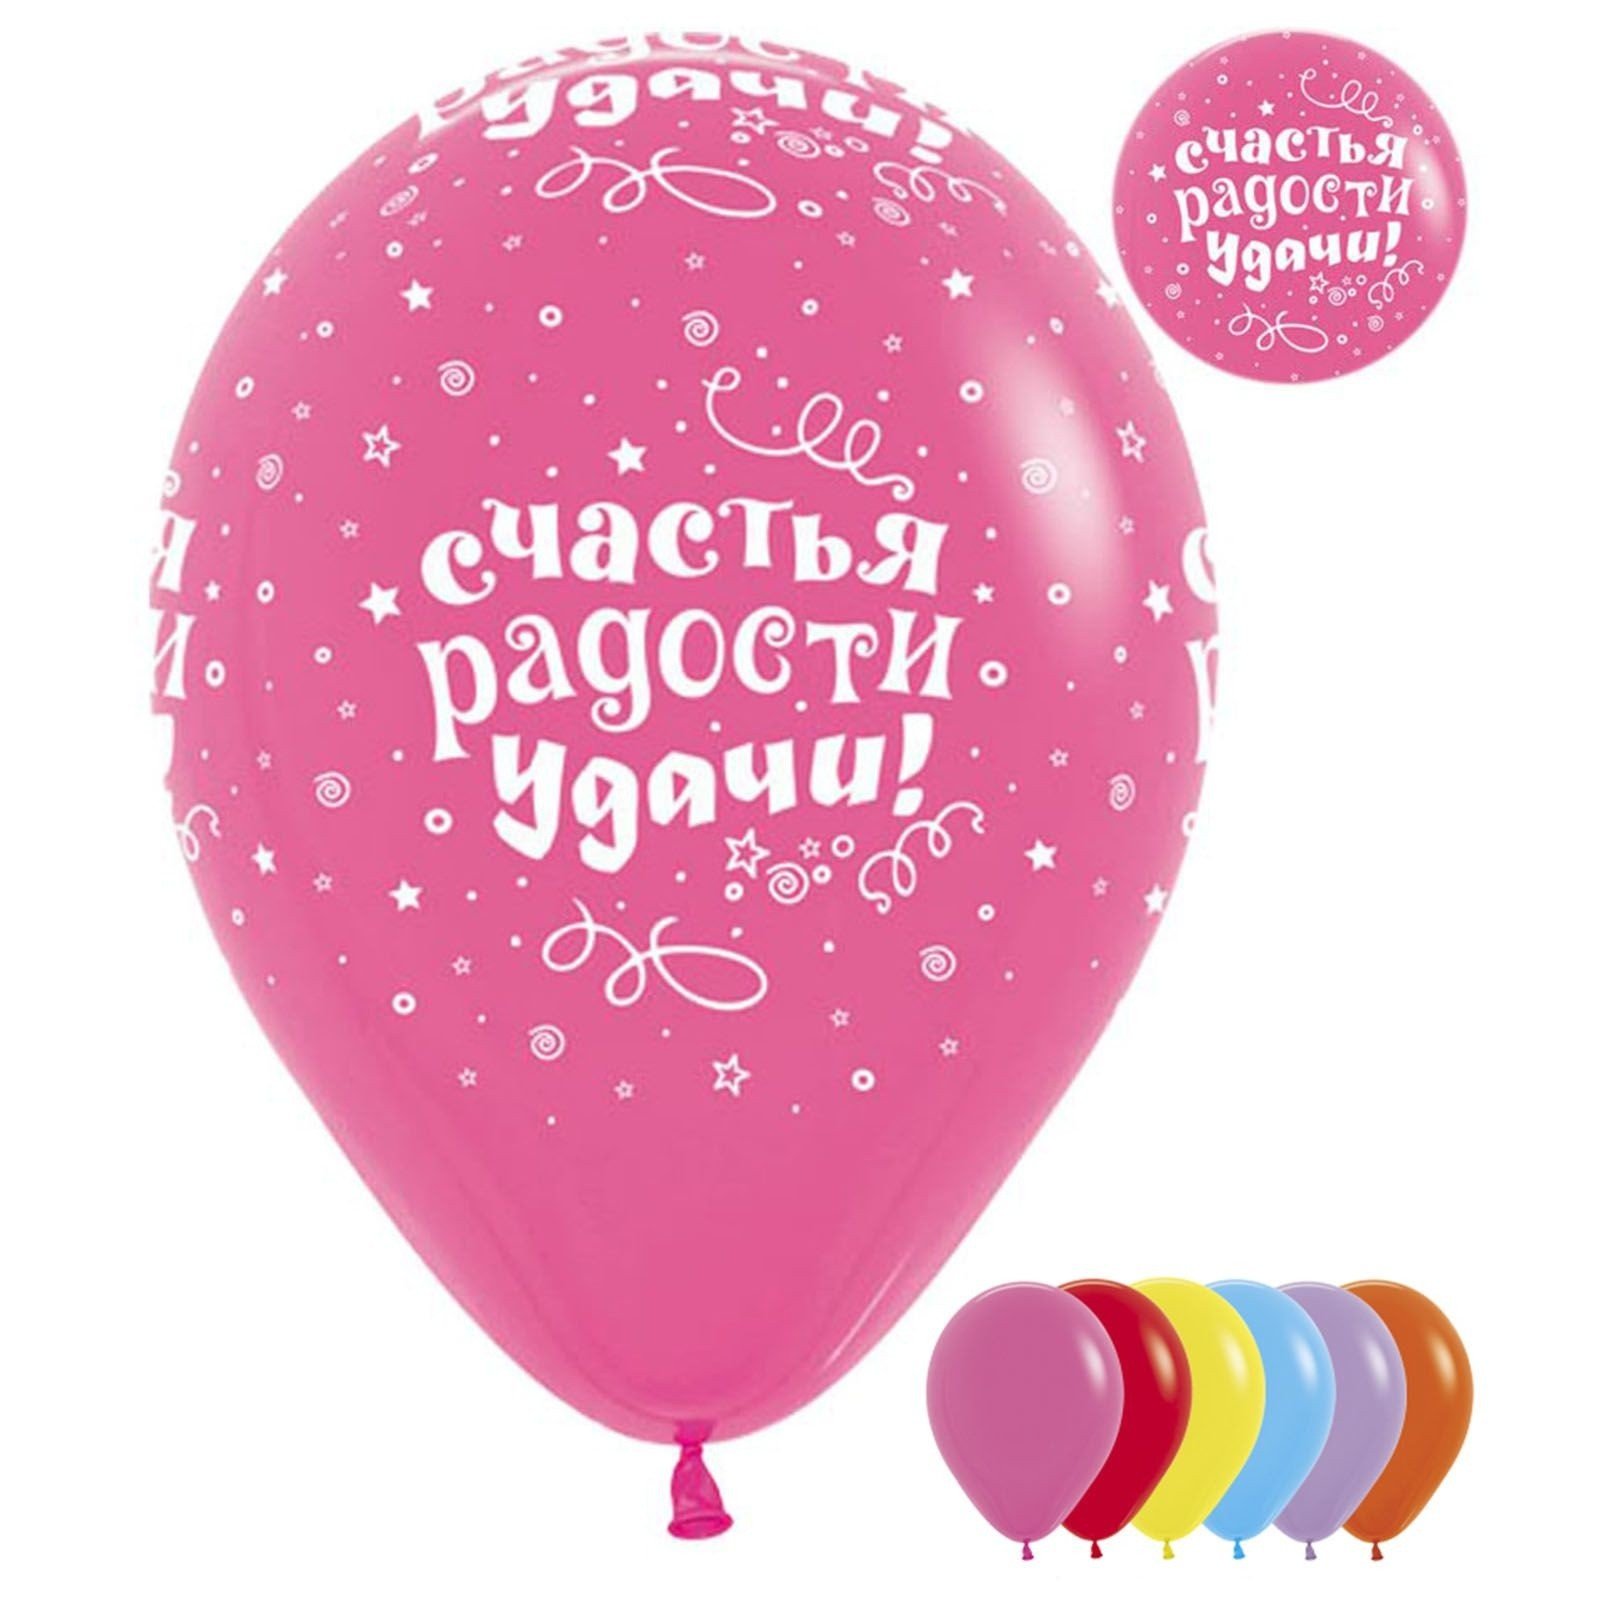 Выражение на шару. Воздушные шары с пожеланиями. Шарики с пожеланиями. С днём рождения шарики. Шарики воздушные с надписями.